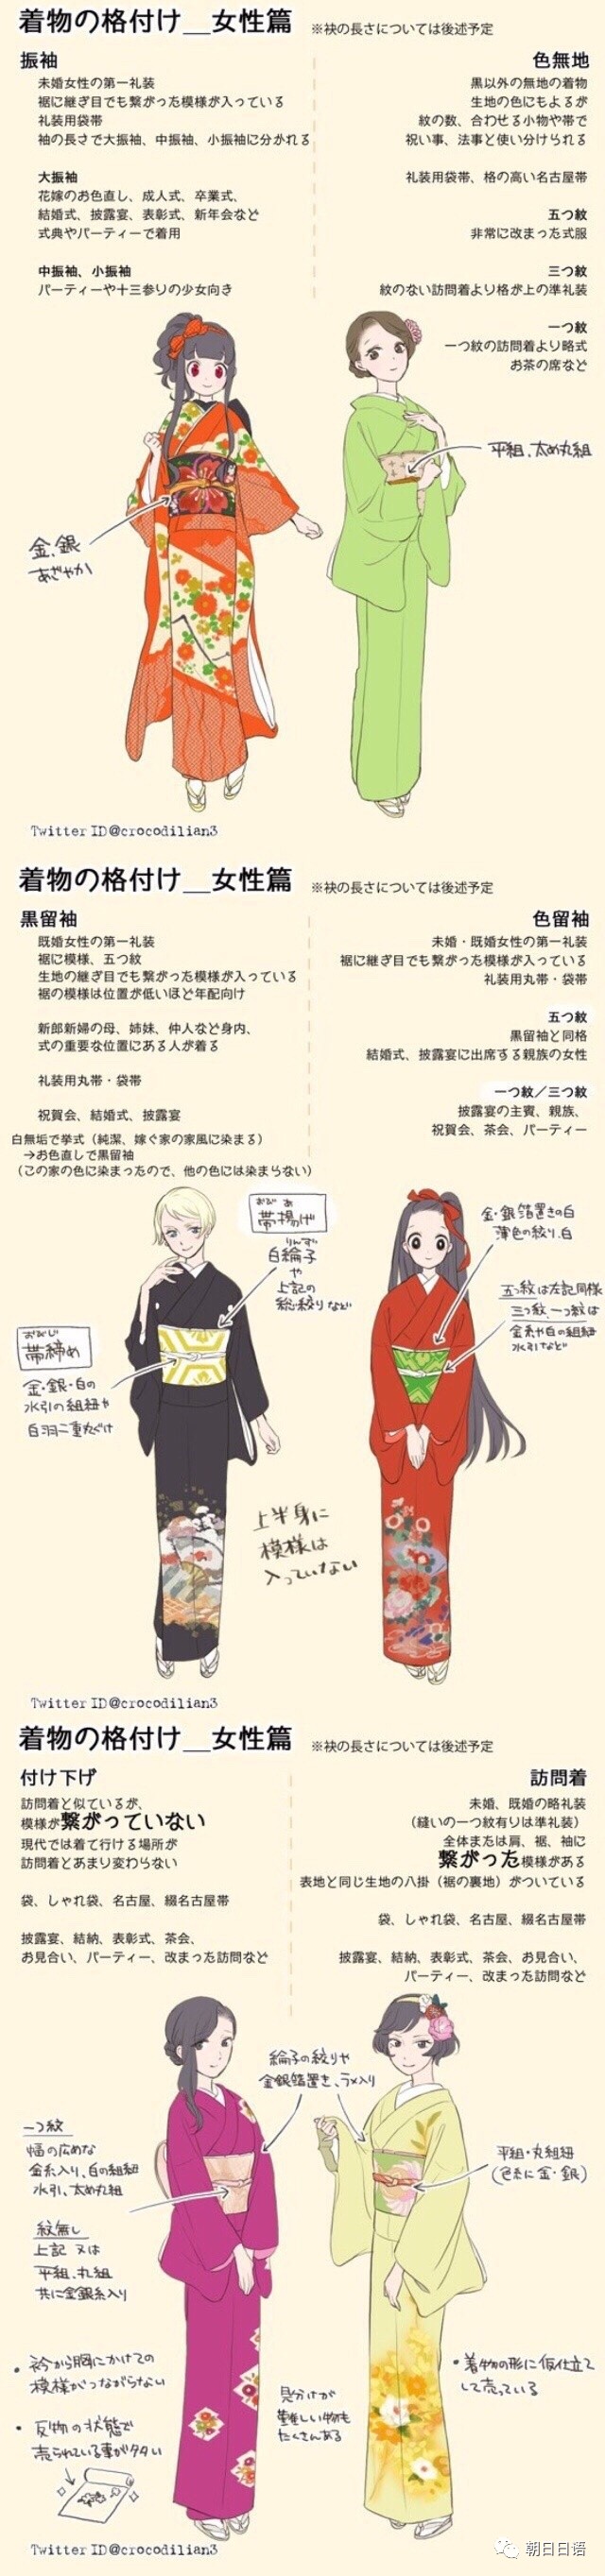 【日本文化】最全日本和服种类介绍!~日推上的手绘和服